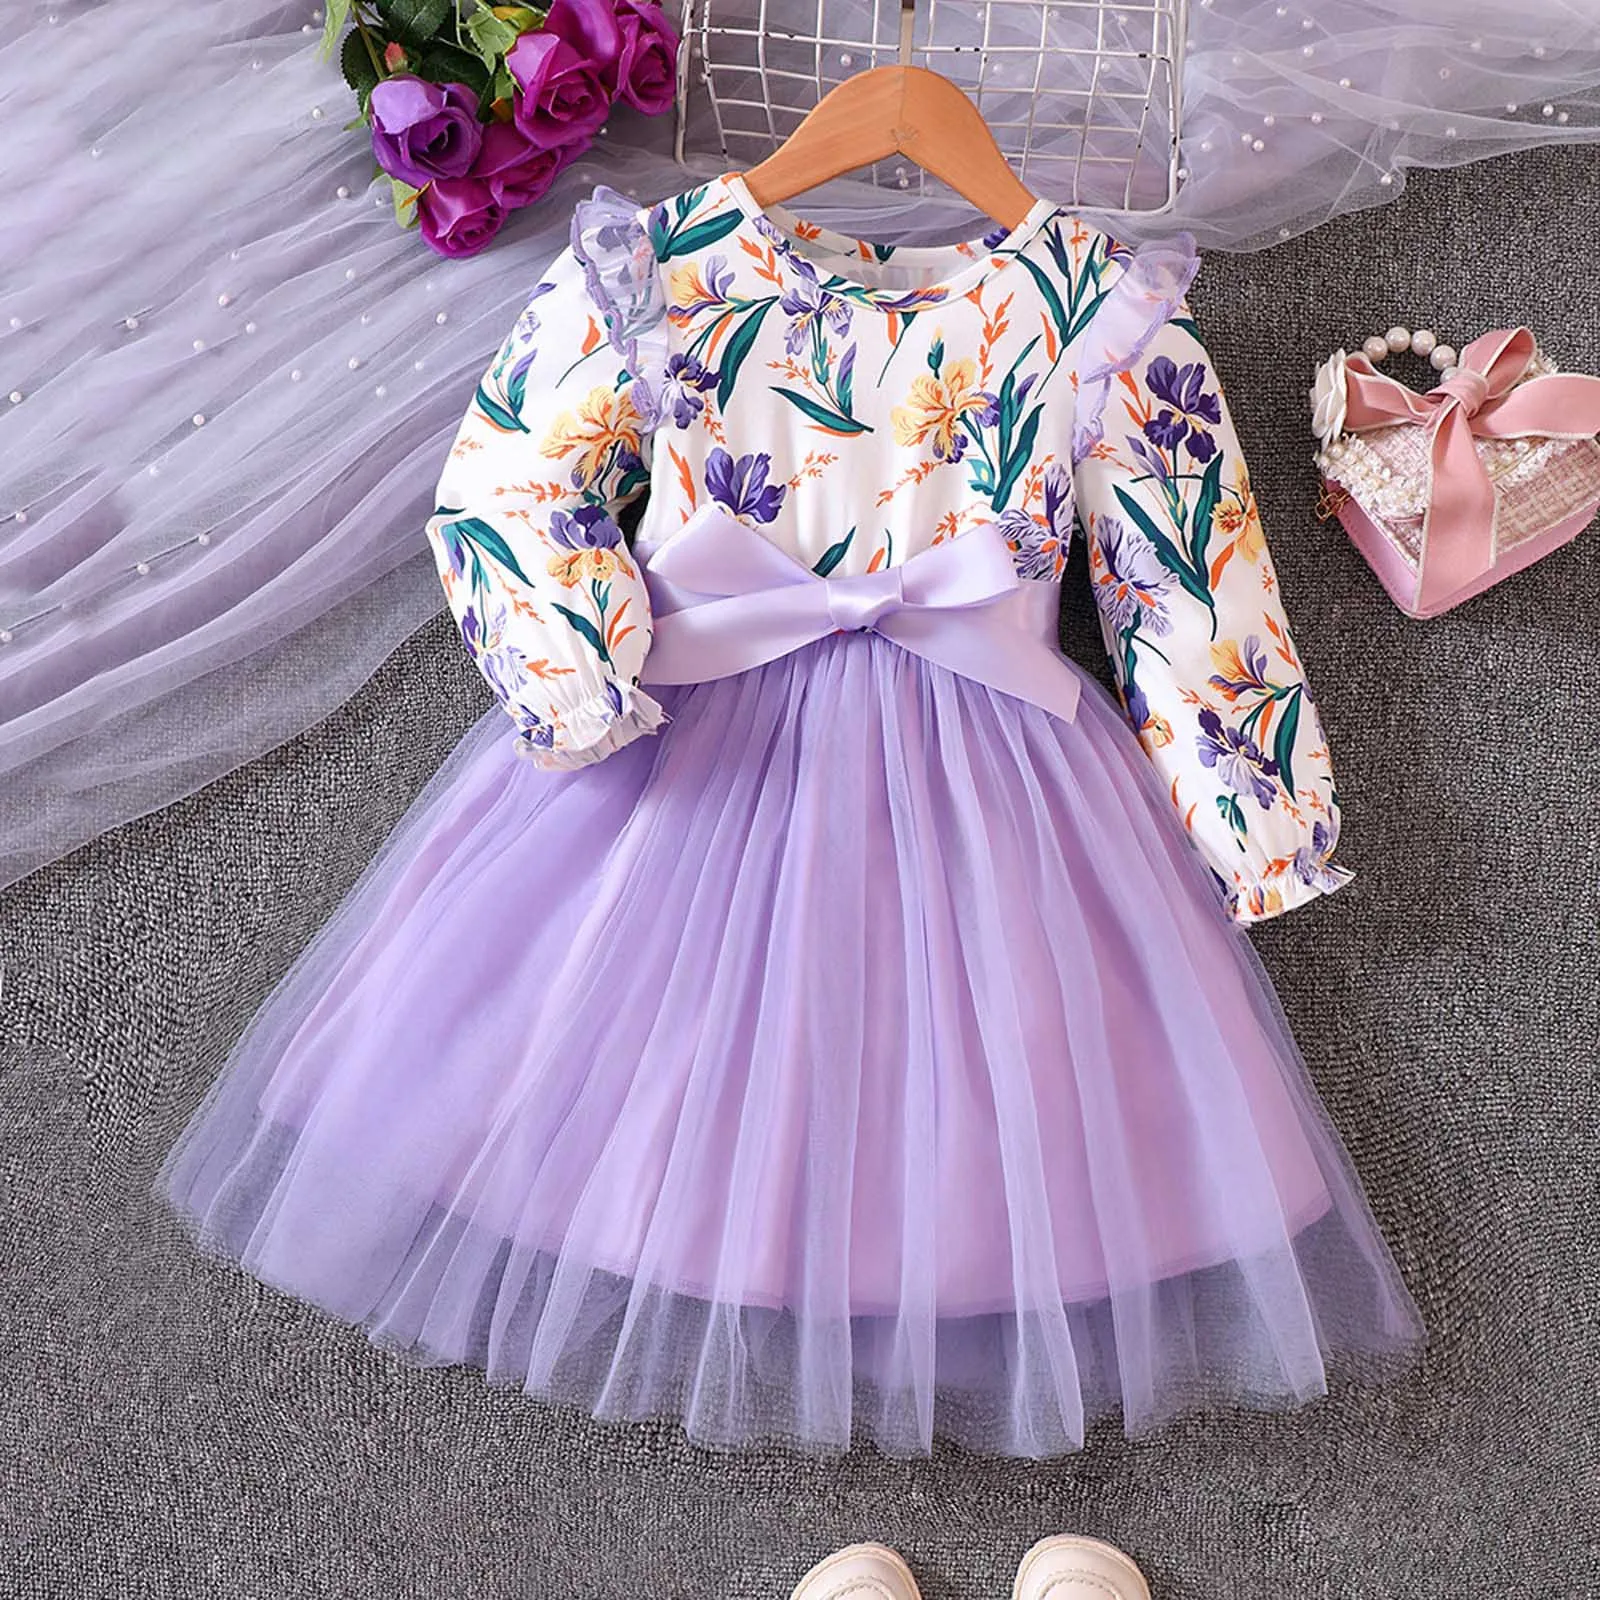 платья для девочек красивые на праздник нарядное фото праздничные одежда детская детский сад стиль